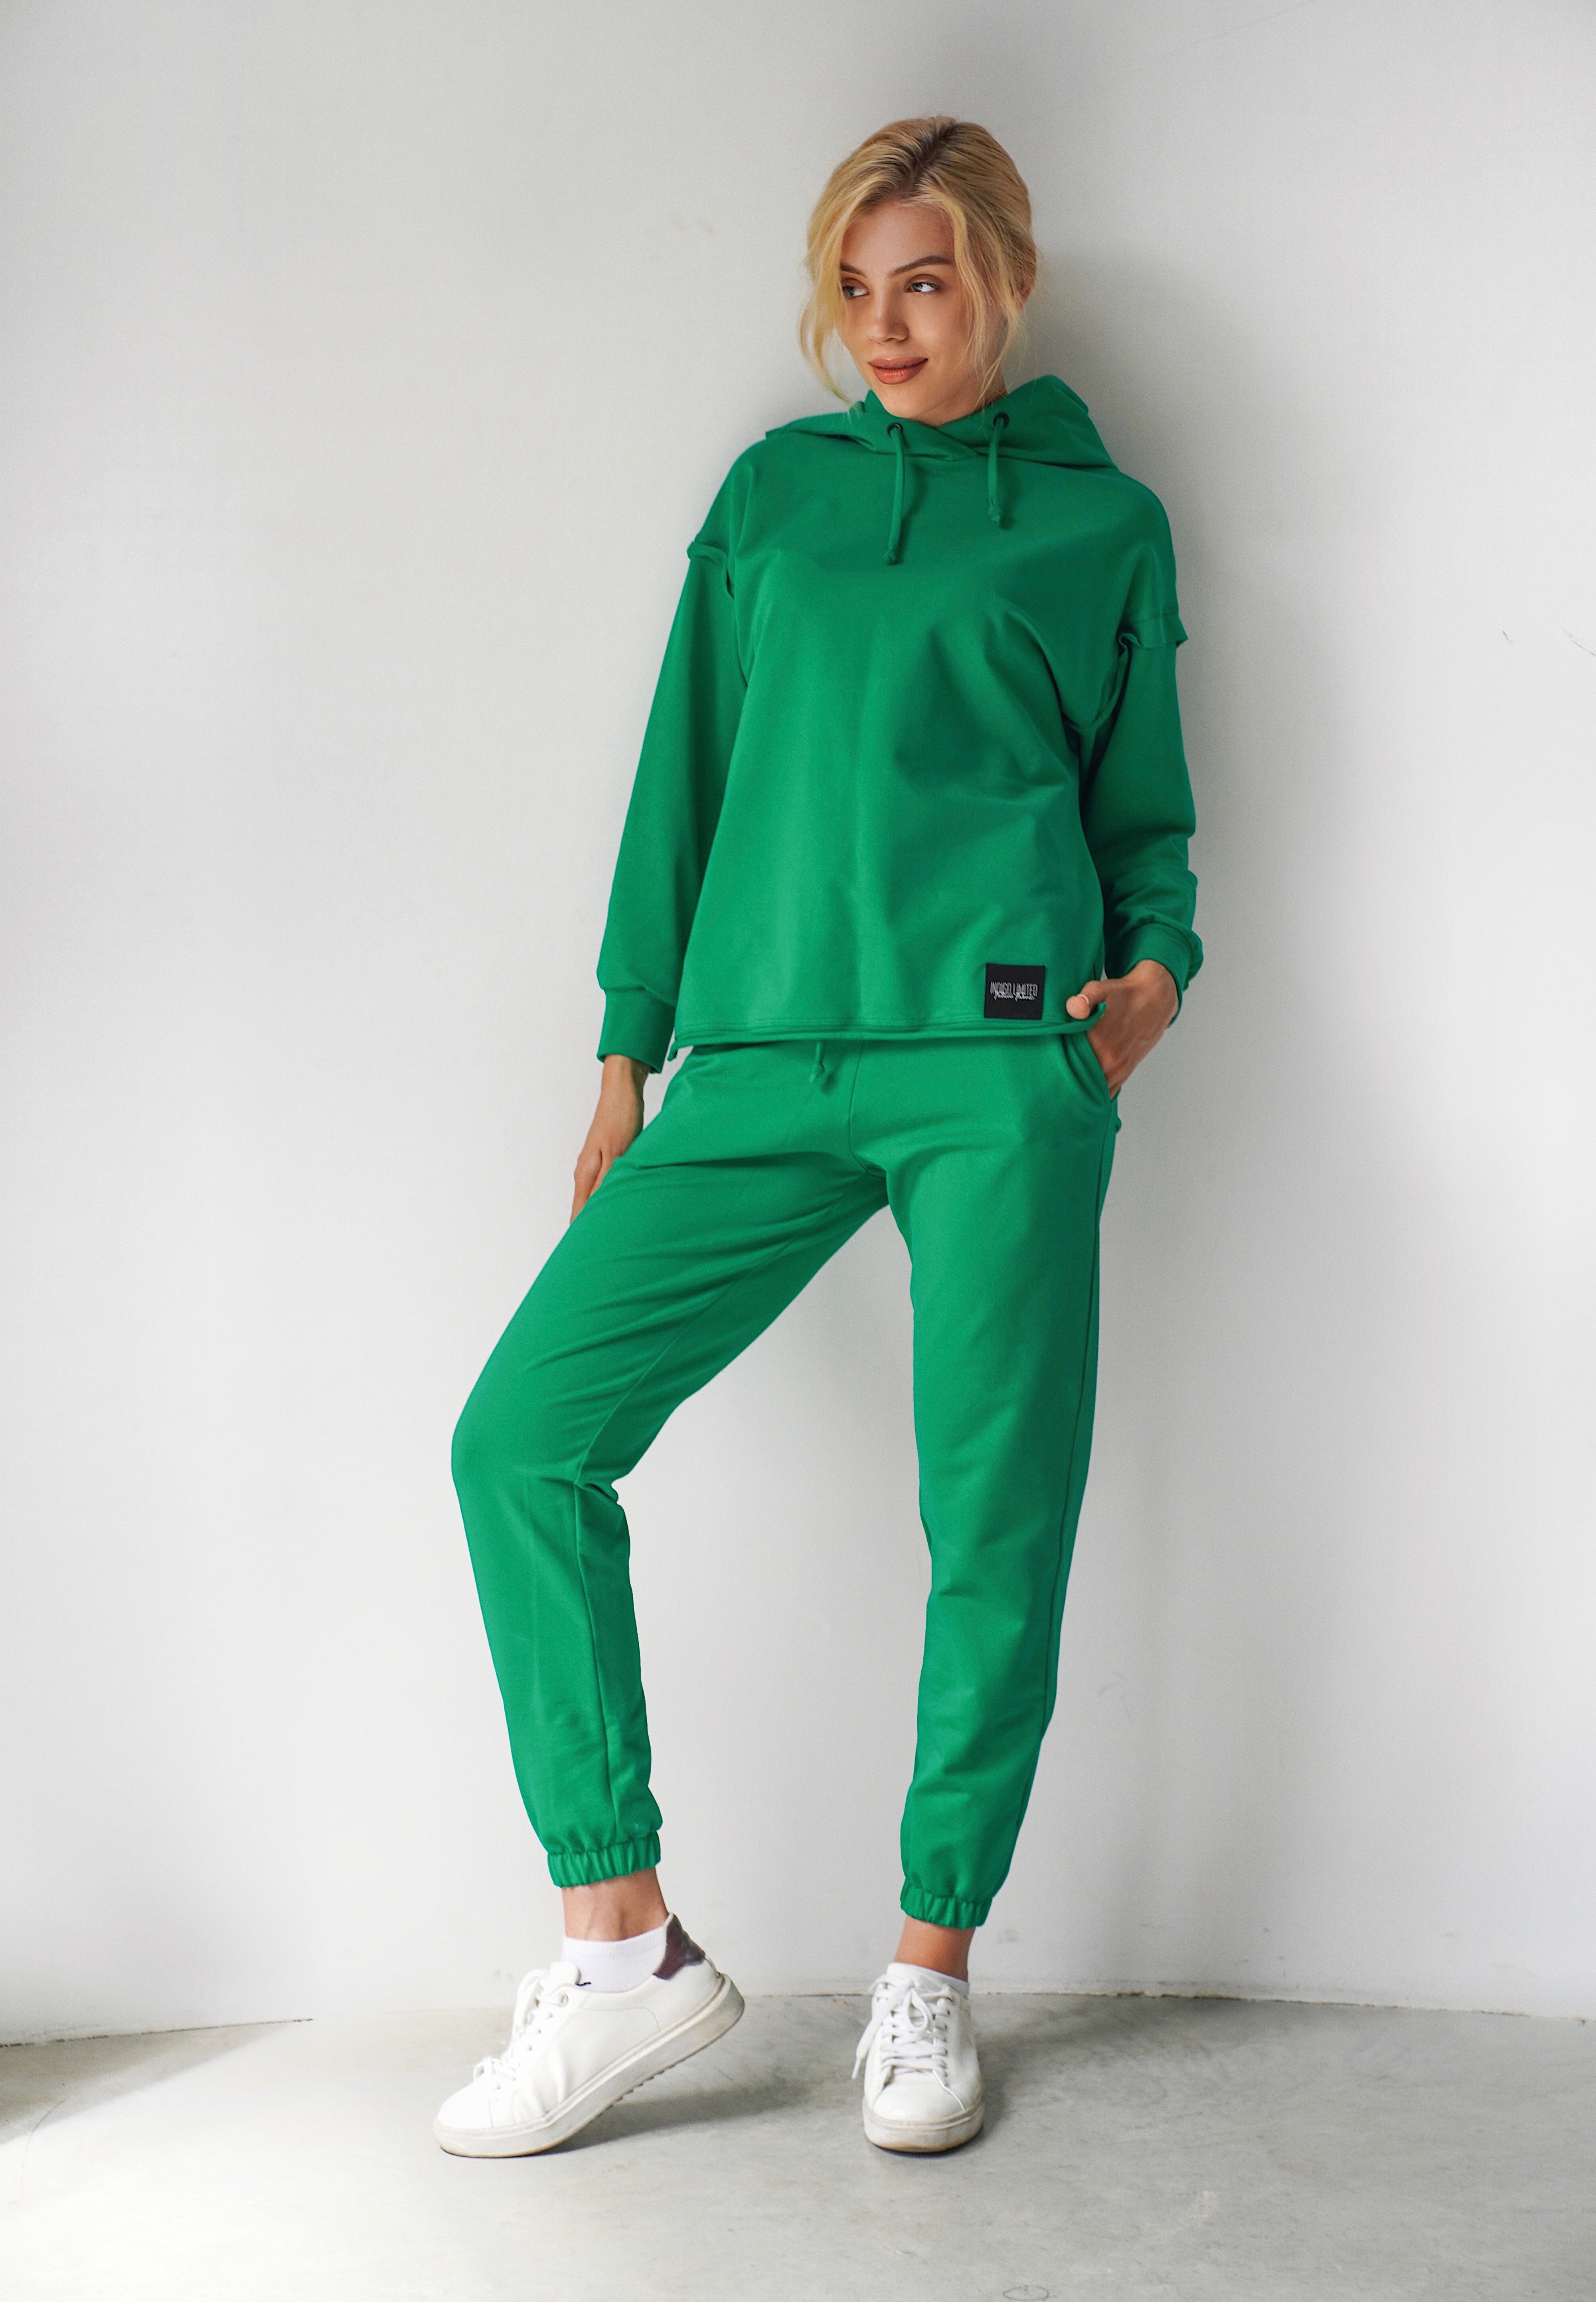 Жіночий літній спортивний костюм з капюшоном іndigo.limited ID 125 Зелений XXL